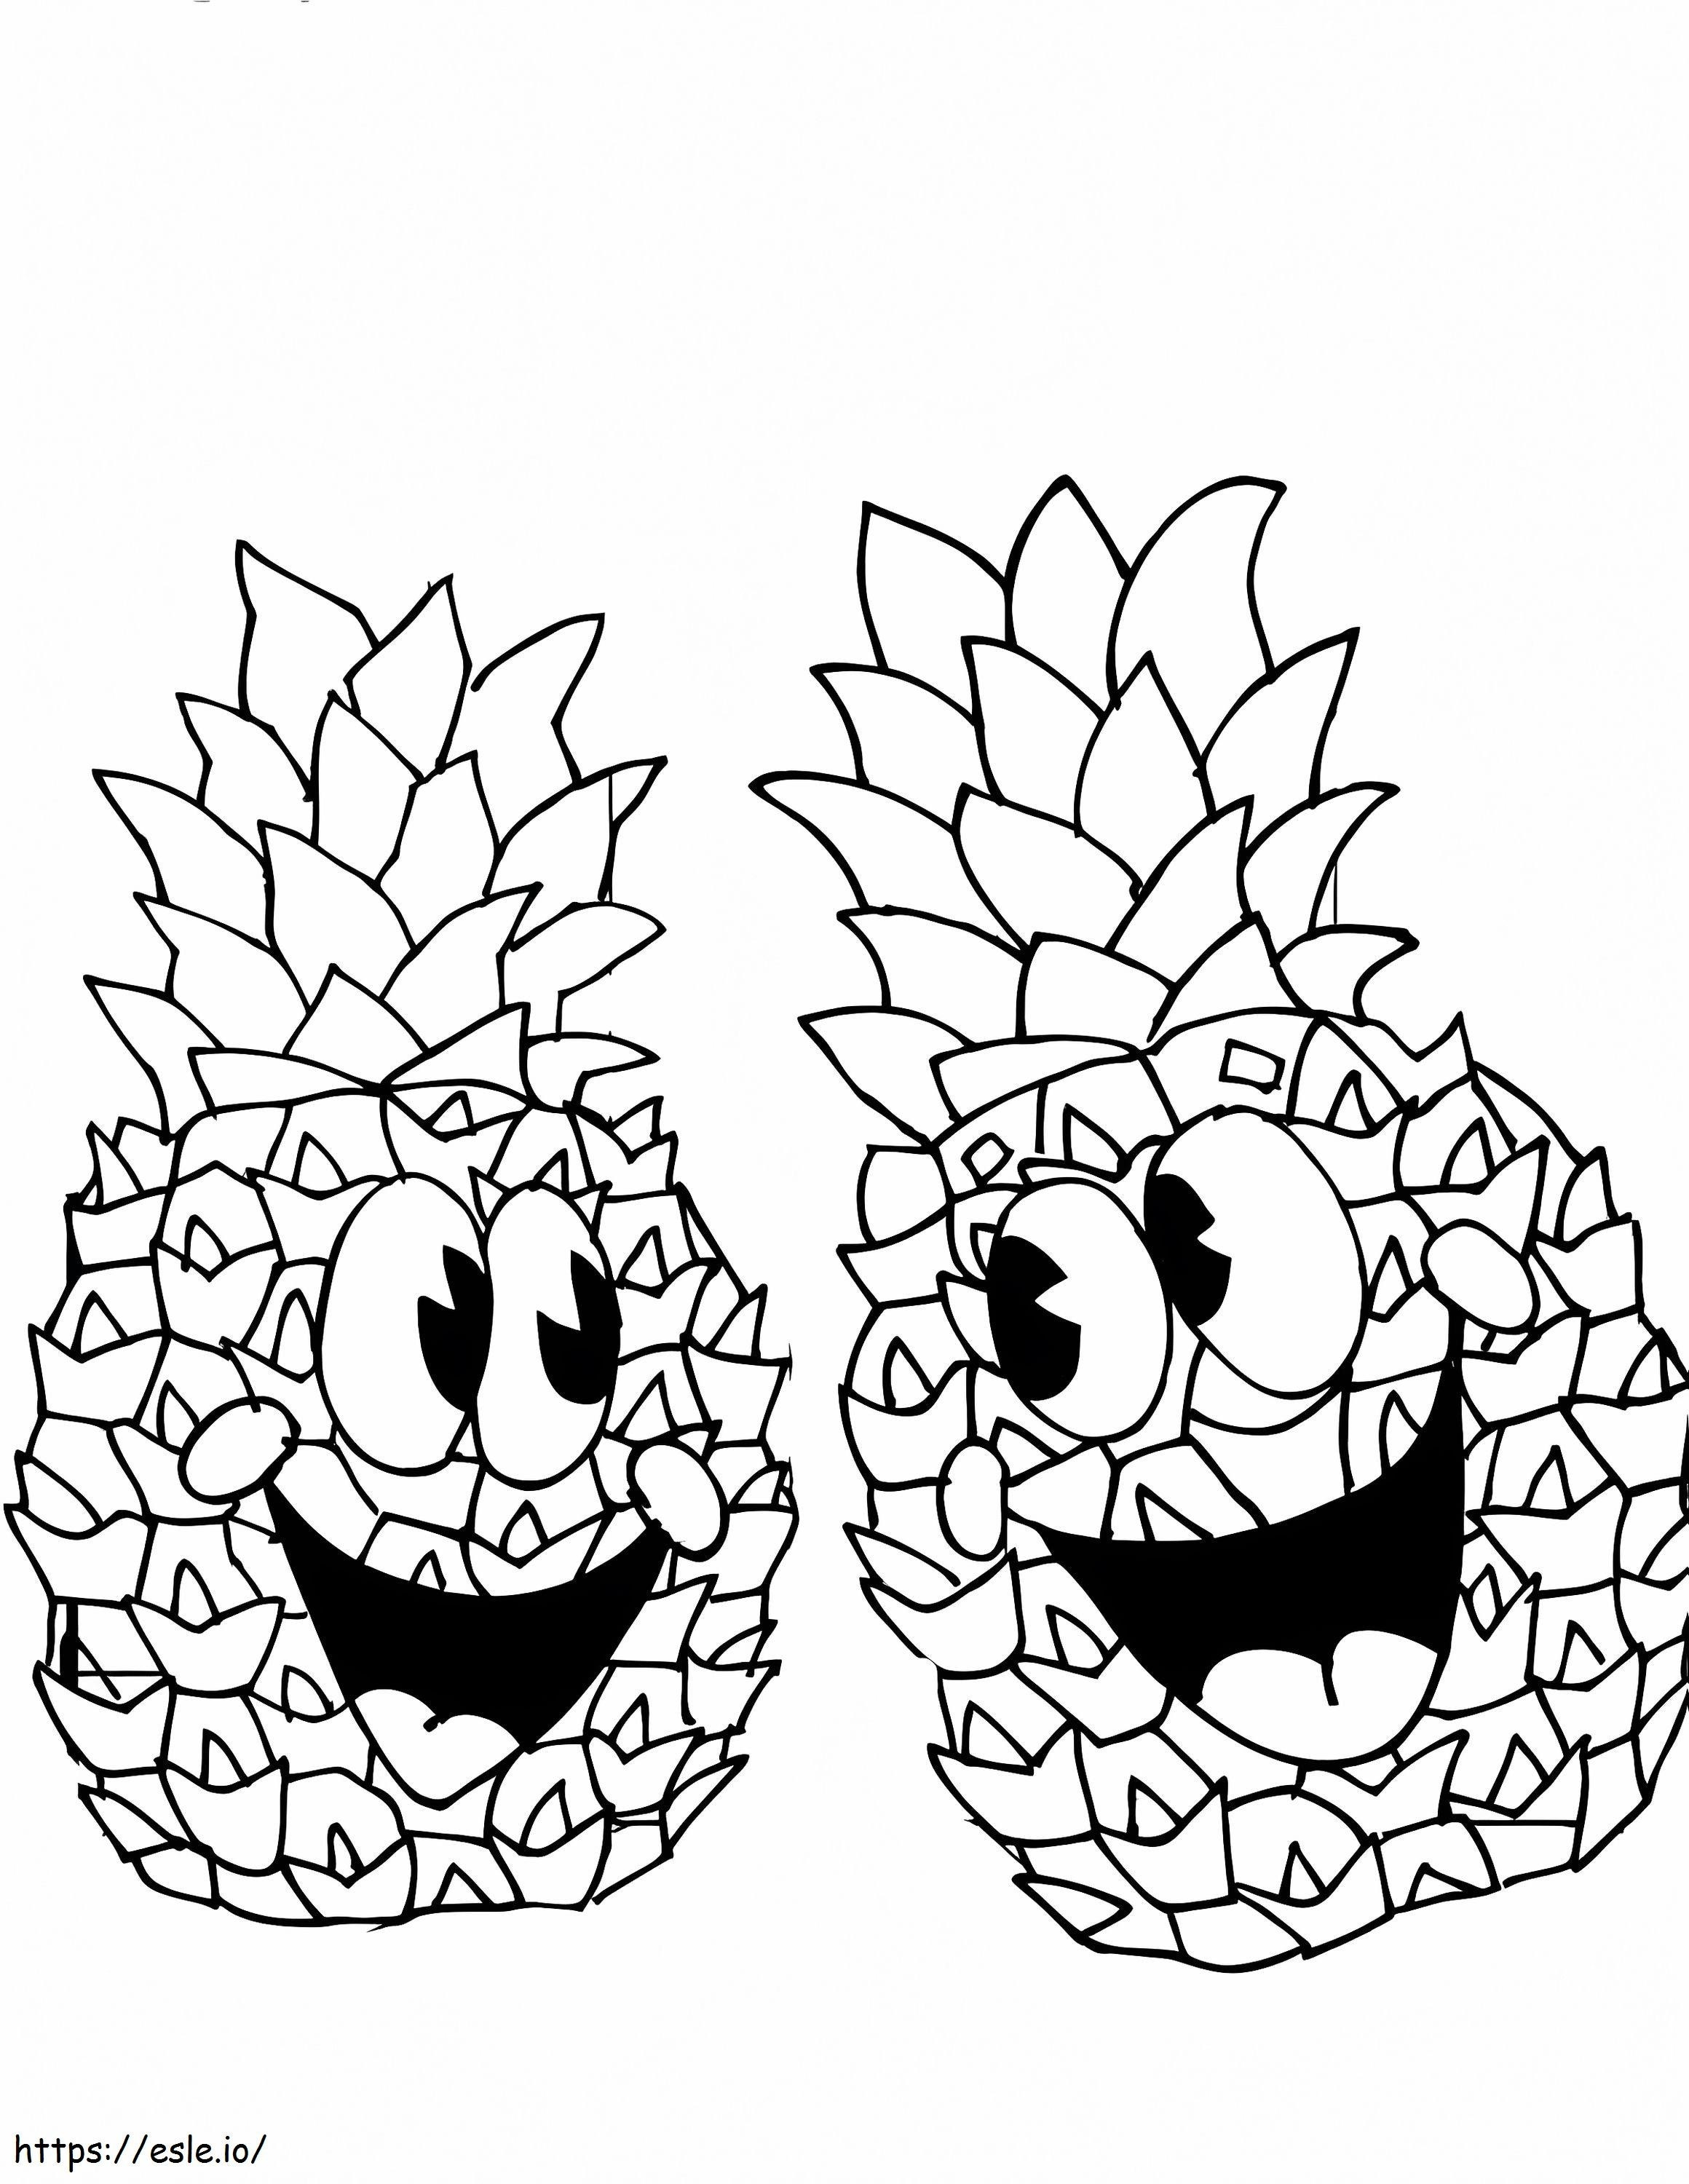 Coloriage Une paire d'ananas heureux à imprimer dessin